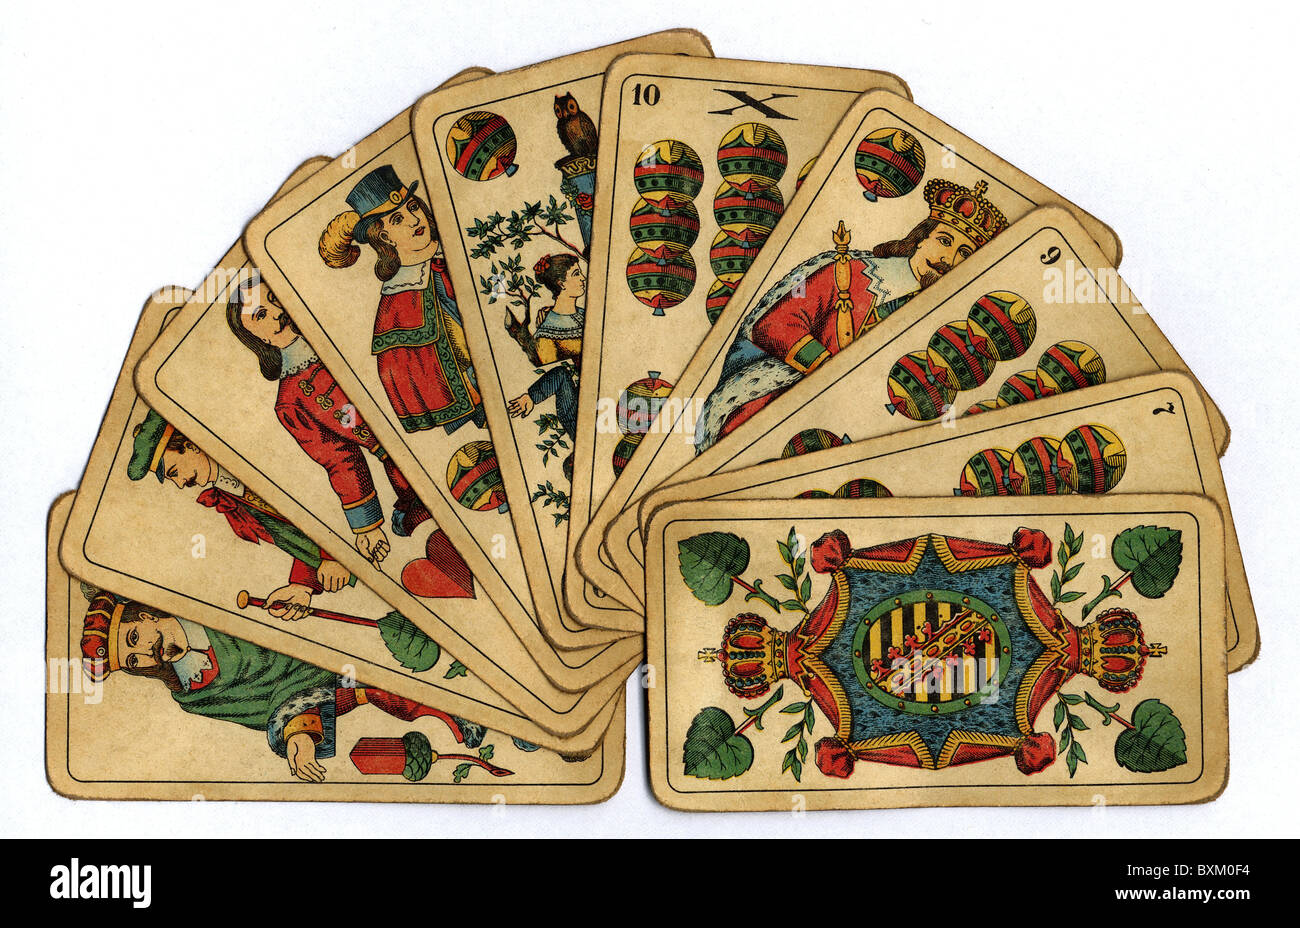 Spiele, Kartenspiel, Skat, Deutschland, 1947,  zusätzliche-Rechte-Clearenzen-nicht verfügbar Stockfotografie - Alamy